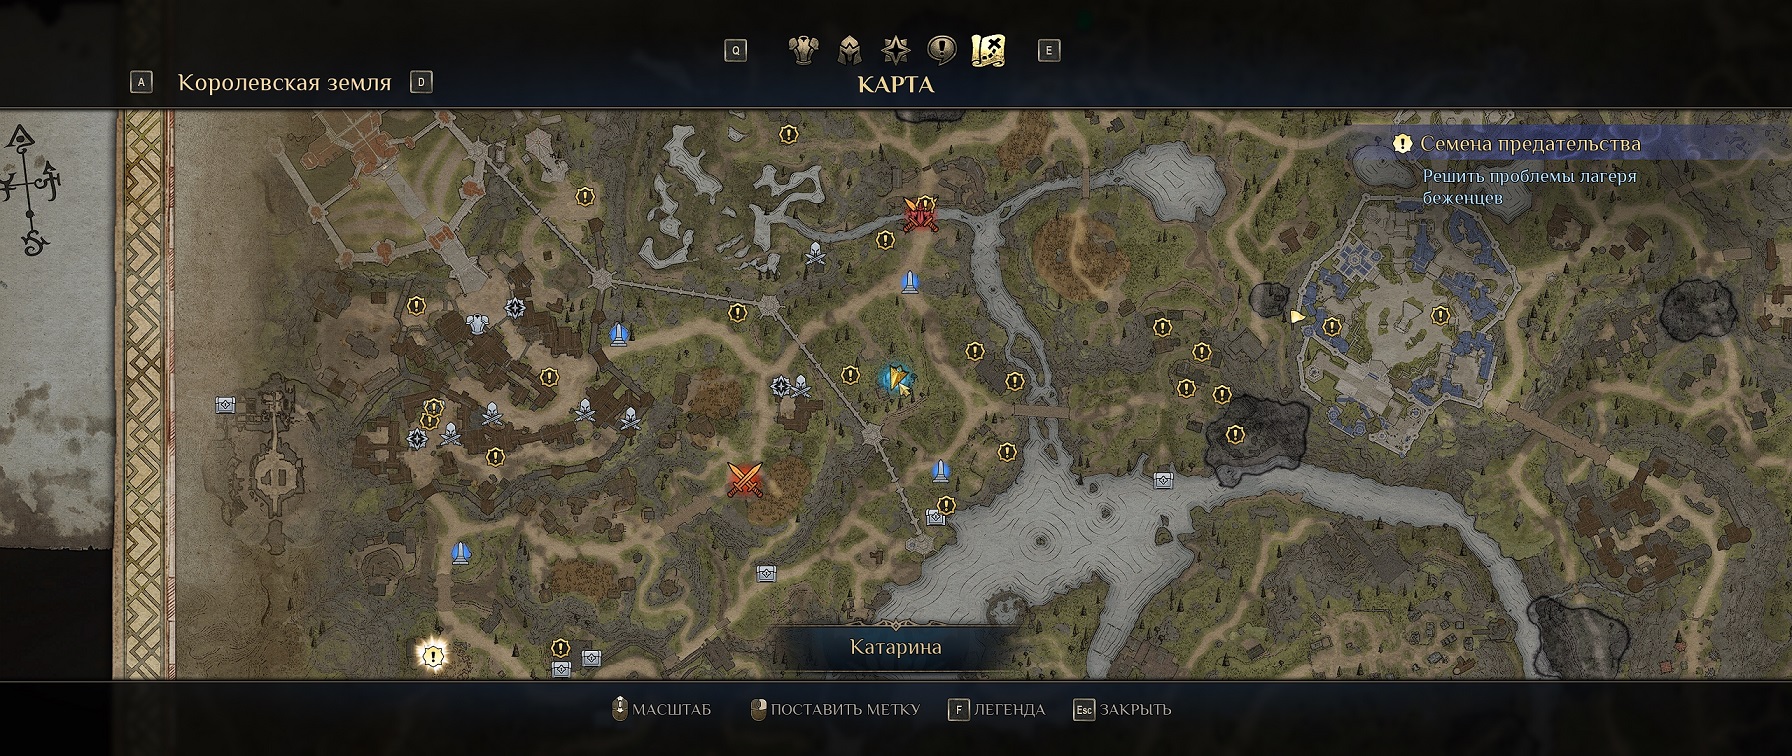 King Bounty 2 Королевская земля интерактивная карта. Магия меча 7 легенды аксирпта сокровища место расположения. Кингдом кам старая карта